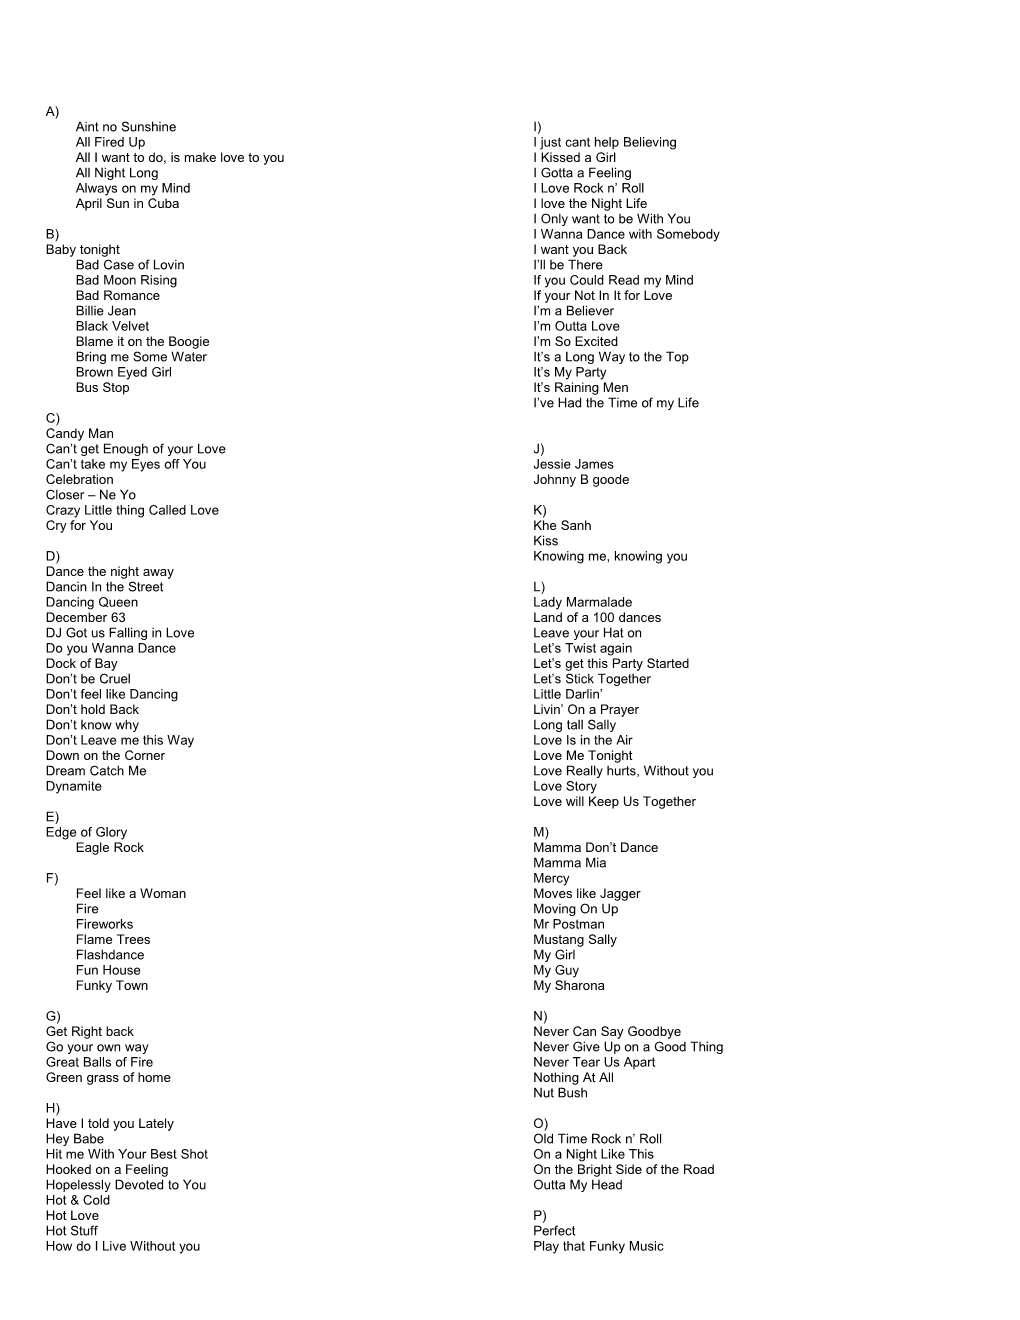 Shazam Song List